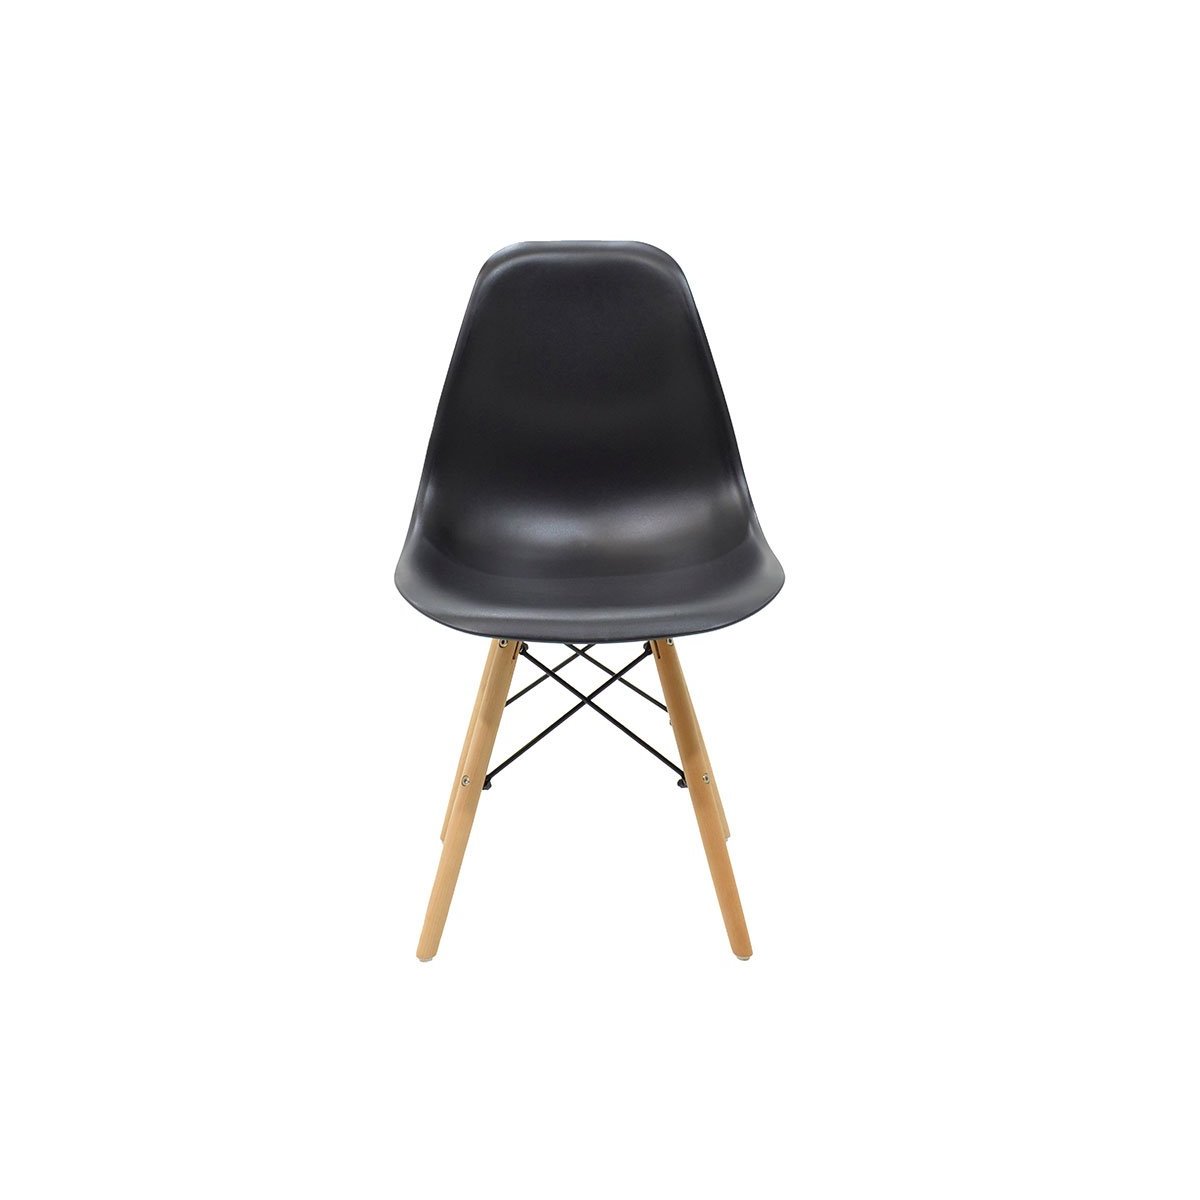 Καρέκλα "ACROPOL" από ξύλο/PP σε χρώμα μαυρο 47x53x82